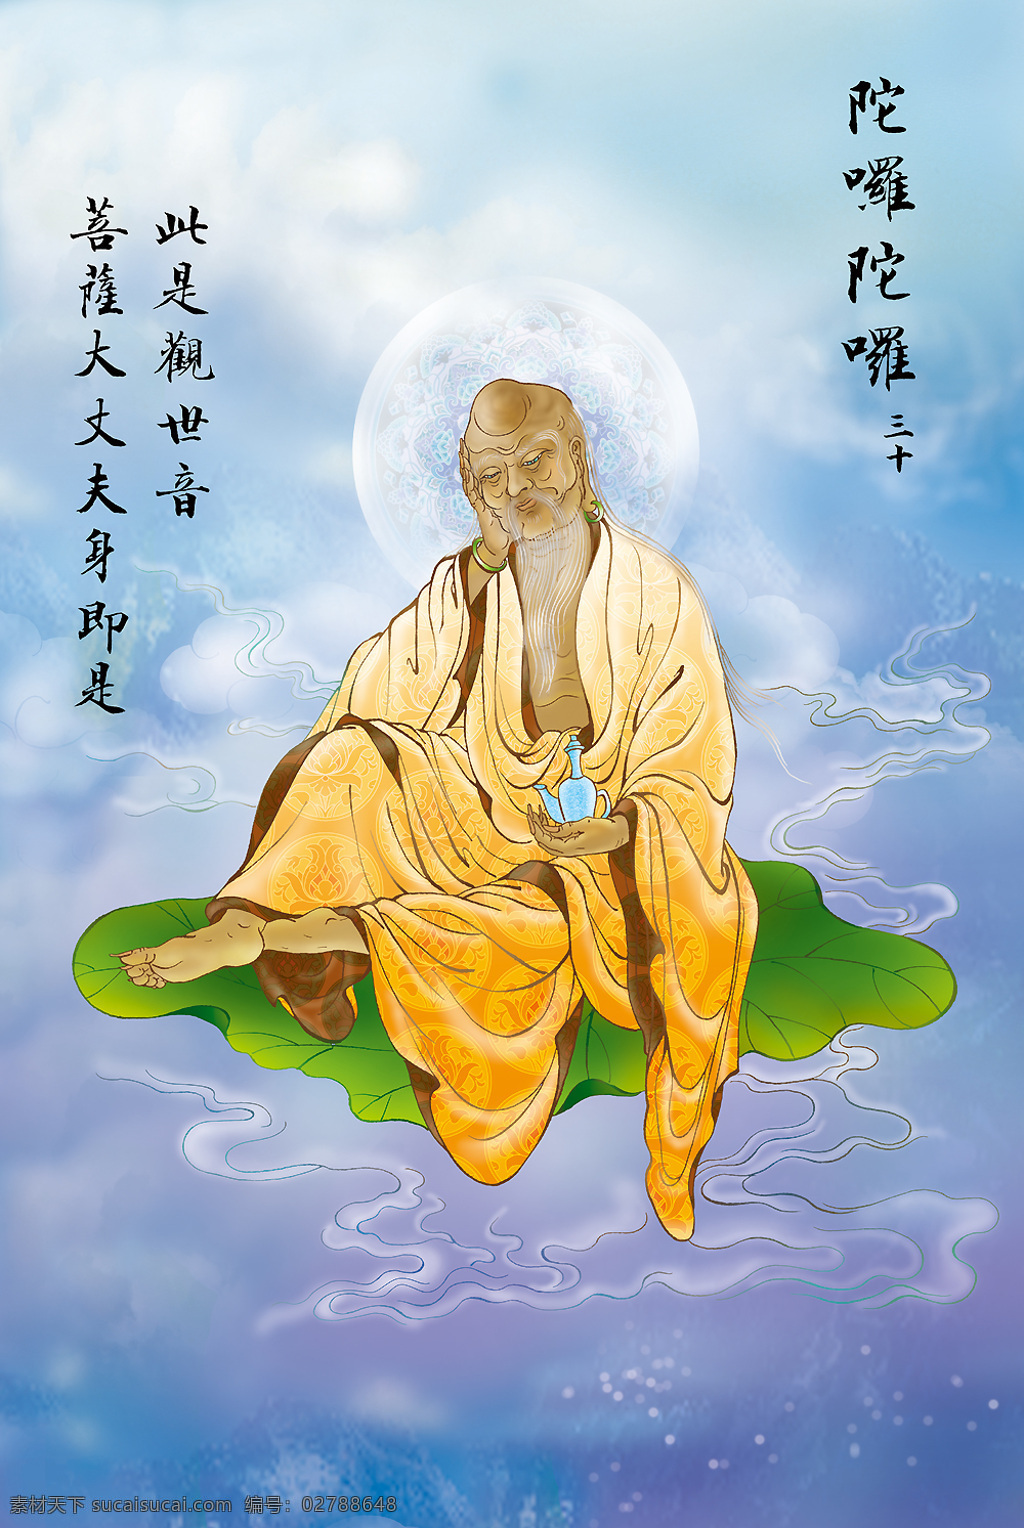 大悲 出 相图 佛教 依林法师画 林隆达居士书 台湾 文化艺术 宗教信仰 设计图库